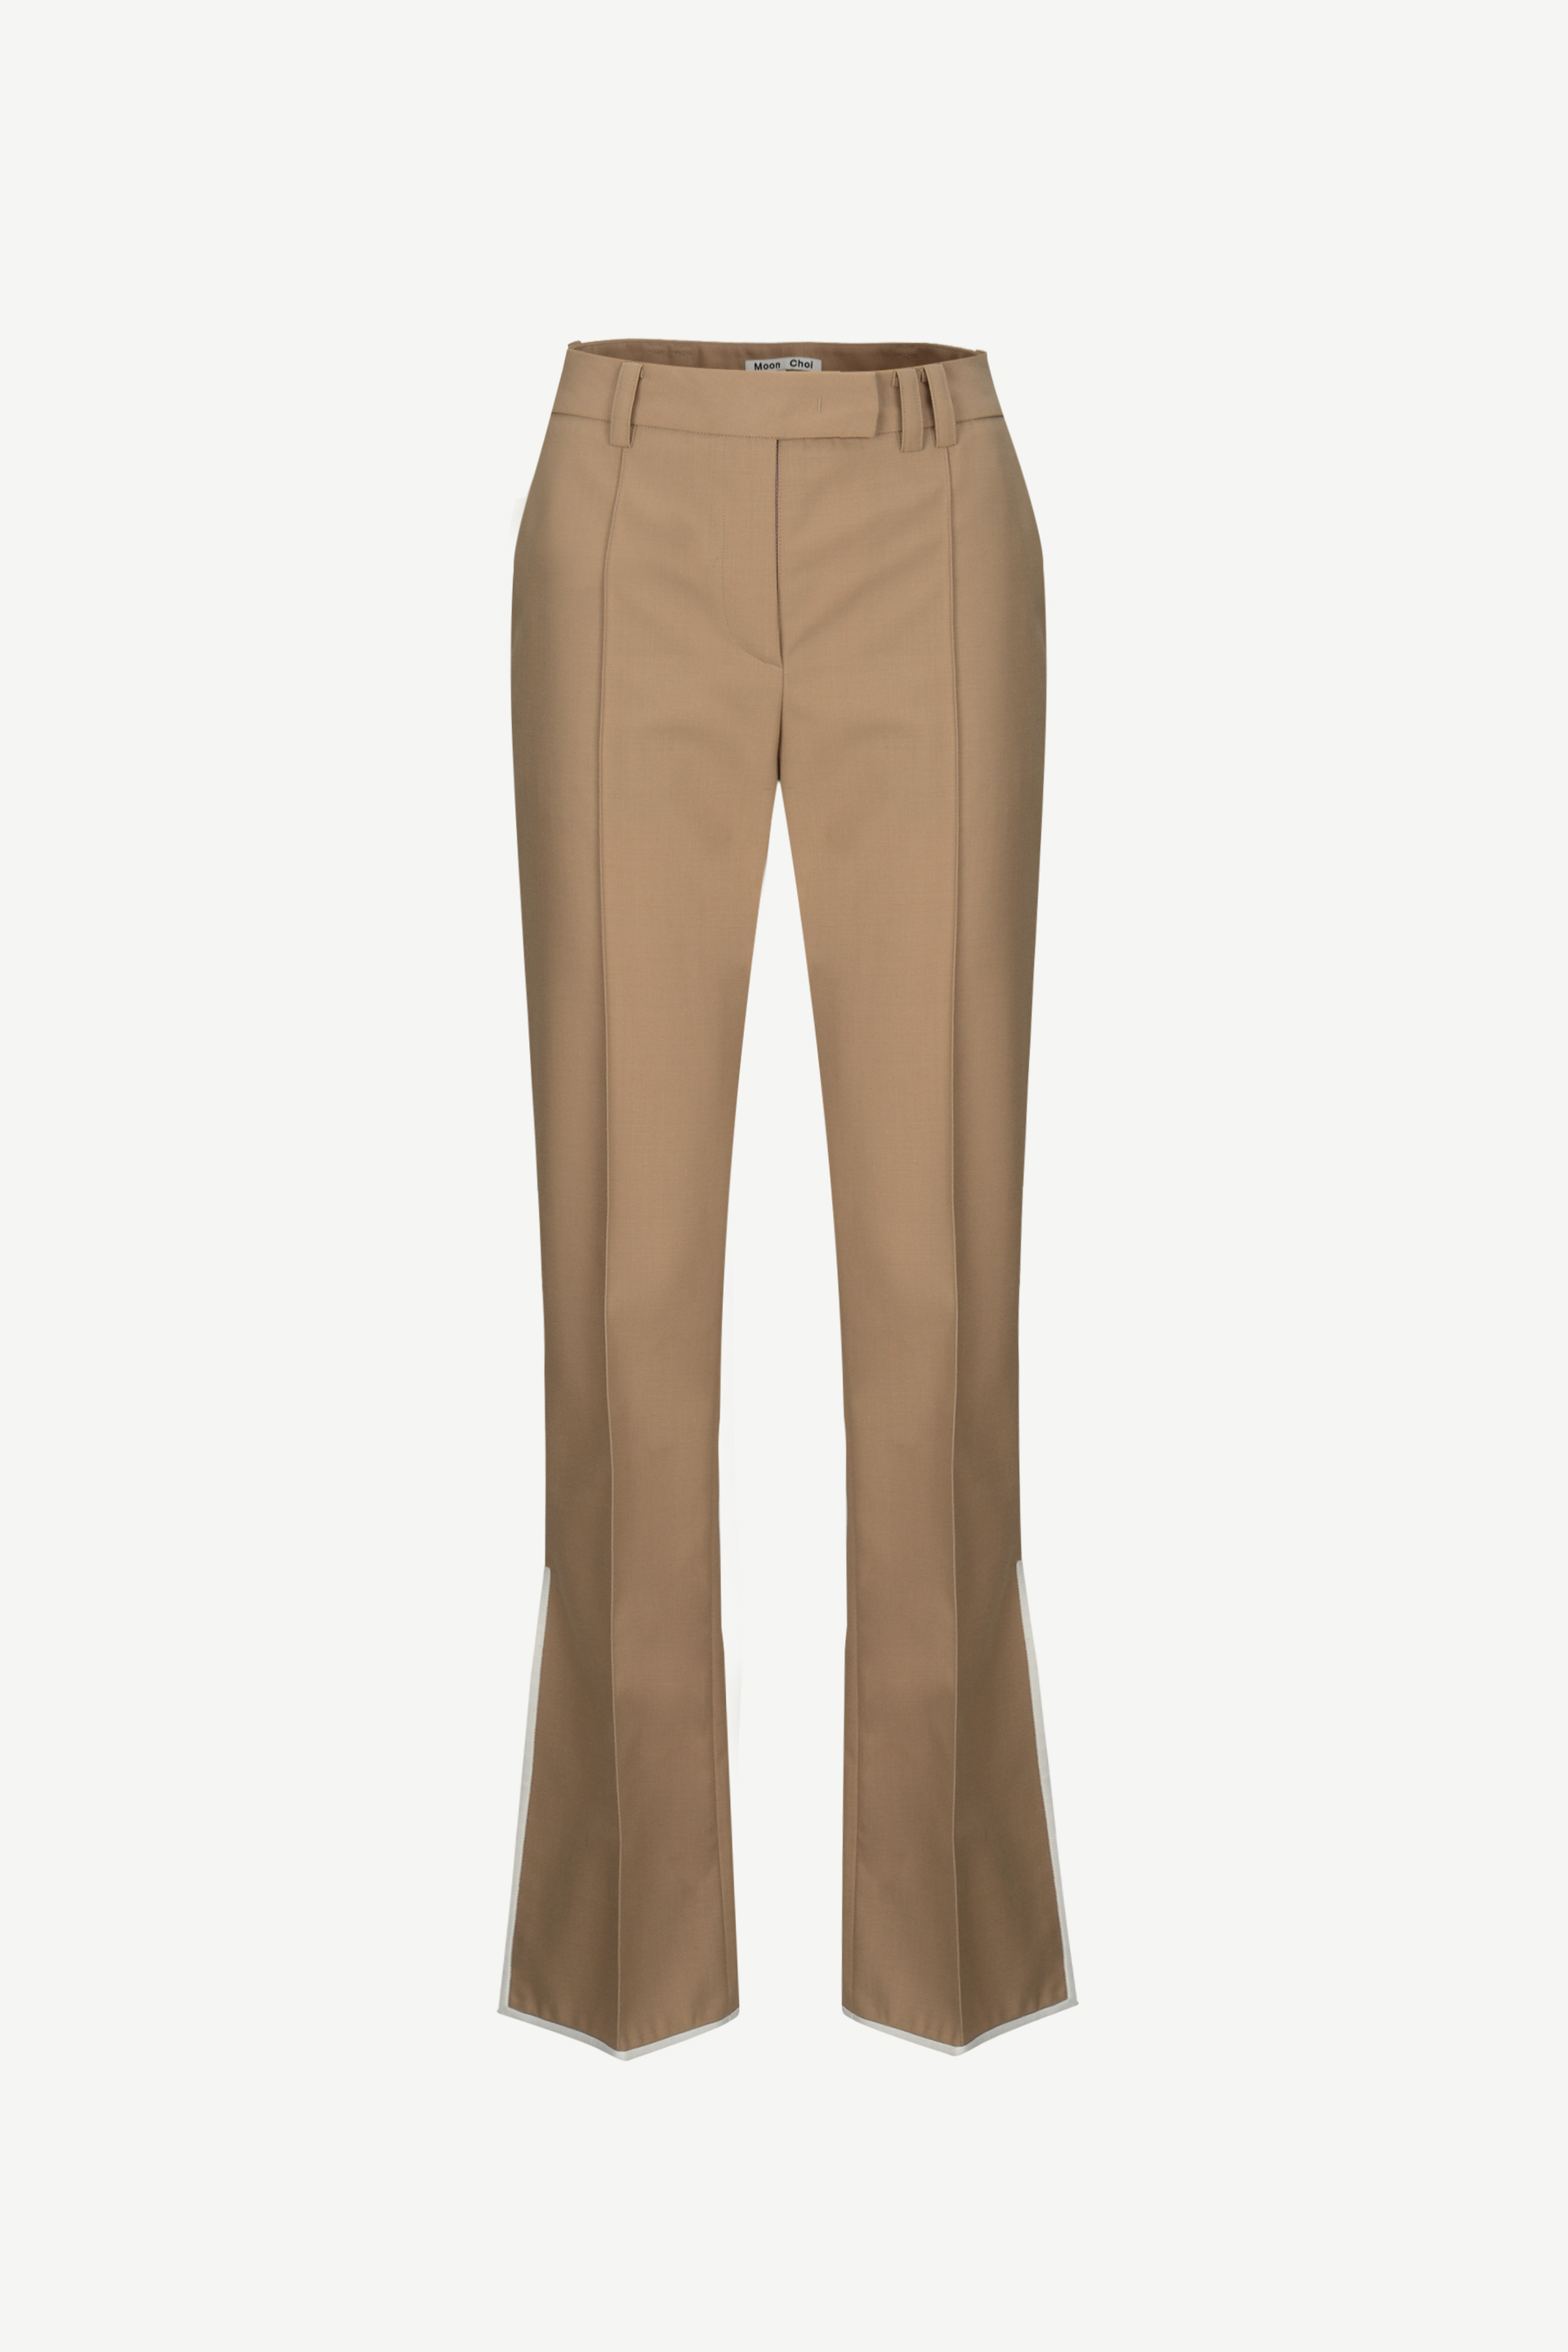 [1차 재입고]Side-slit flared trousers